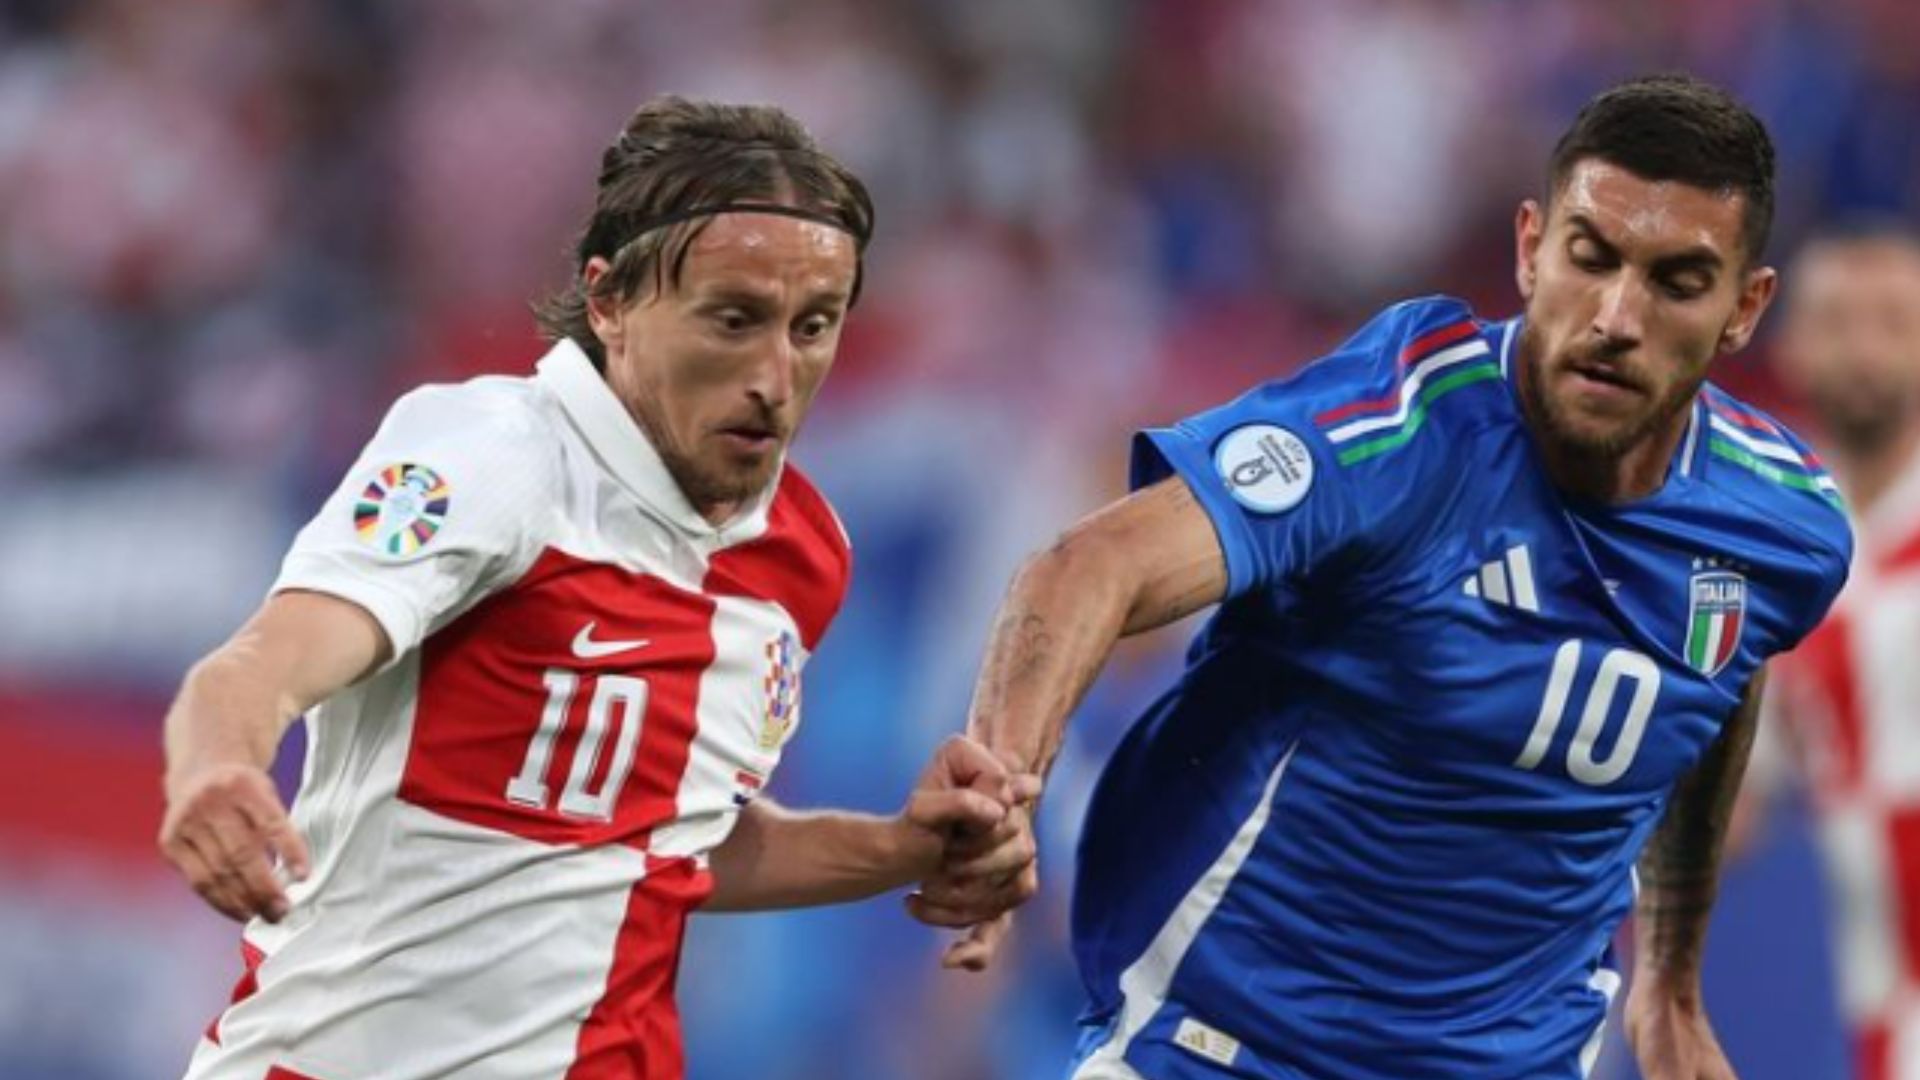 Briga entre torcedores da Itália e Croácia deixa quatro feridos após jogo da EUROCOPA